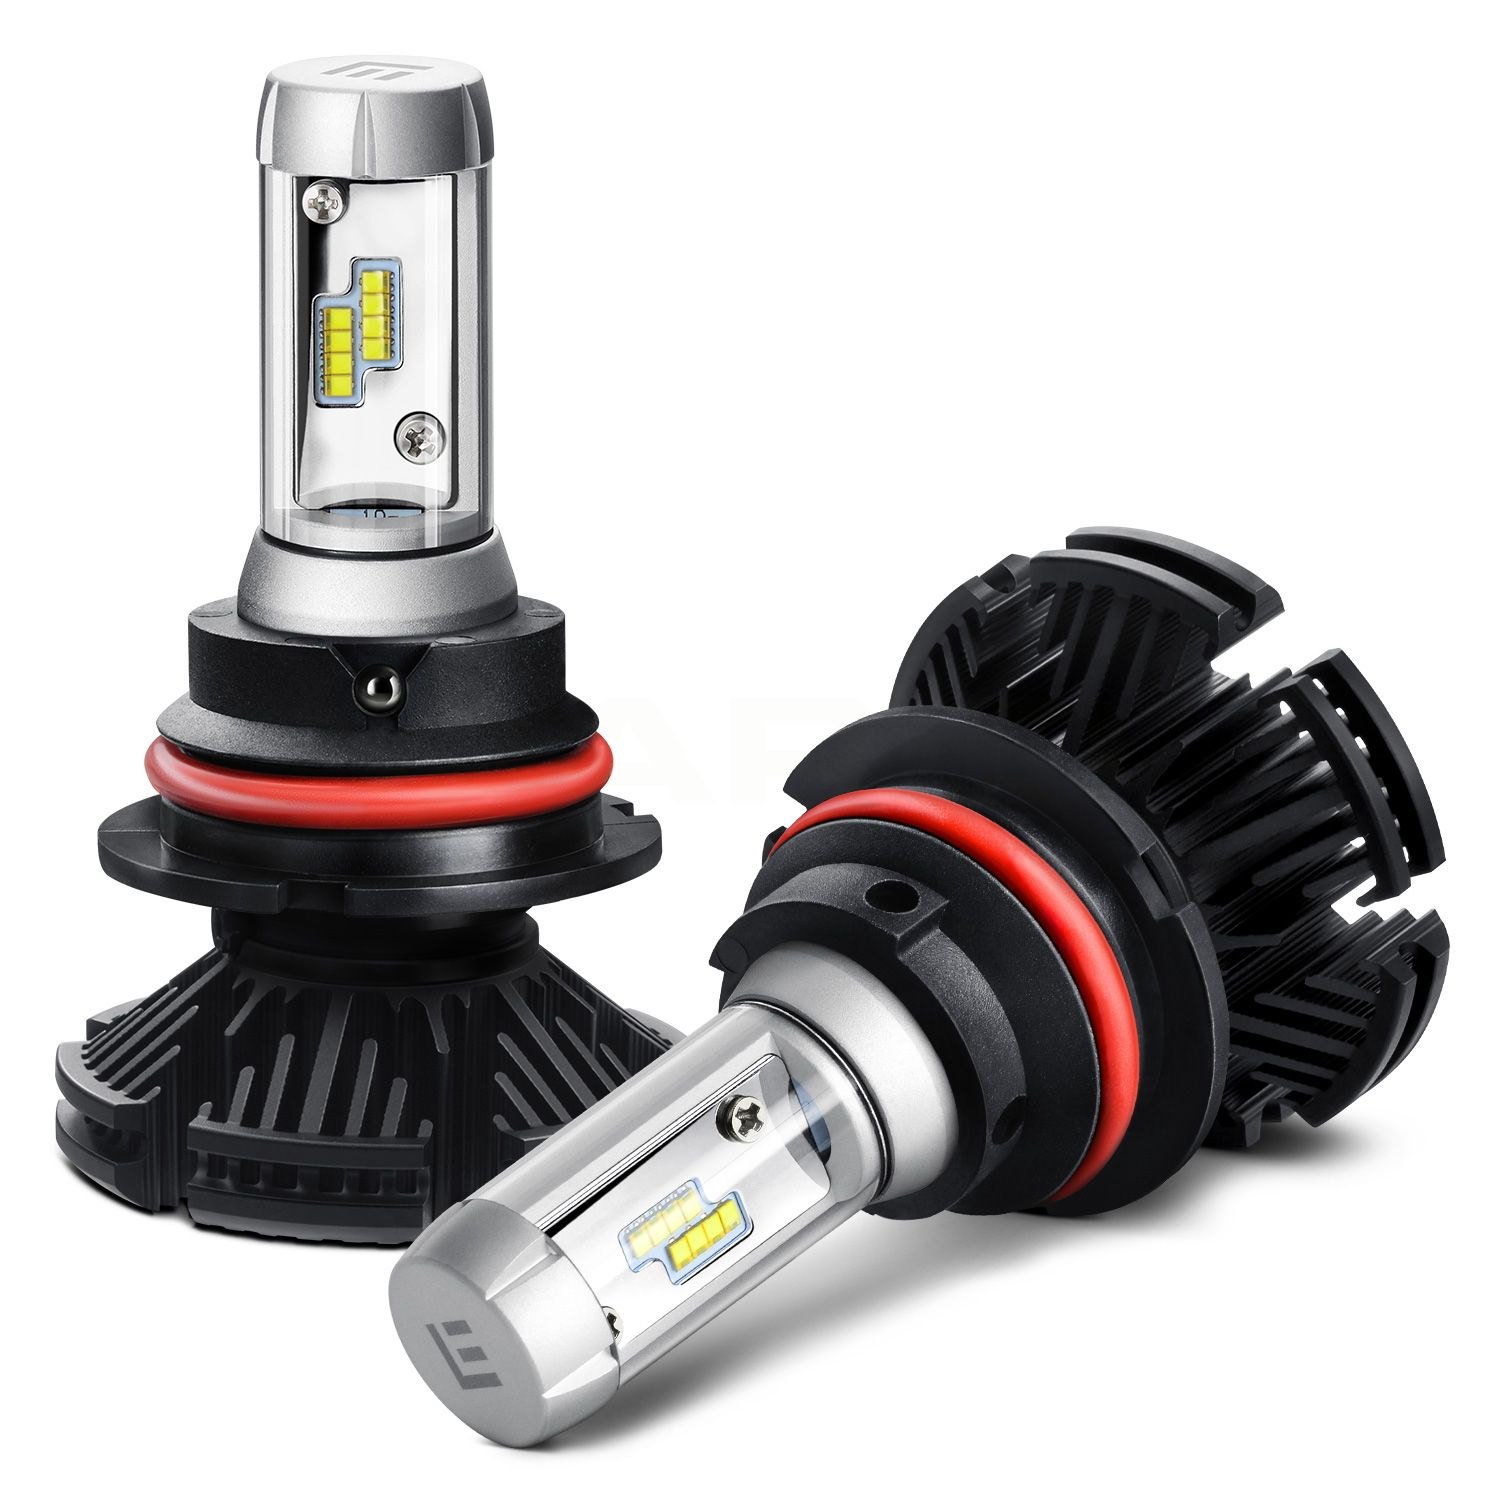 Купить led headlight. Hb5 9007 led c6. Лампа светодиодная c6 hb5 9007 led. 5g Mini Series led Headlight h27. K18 led Headlight 130ват.